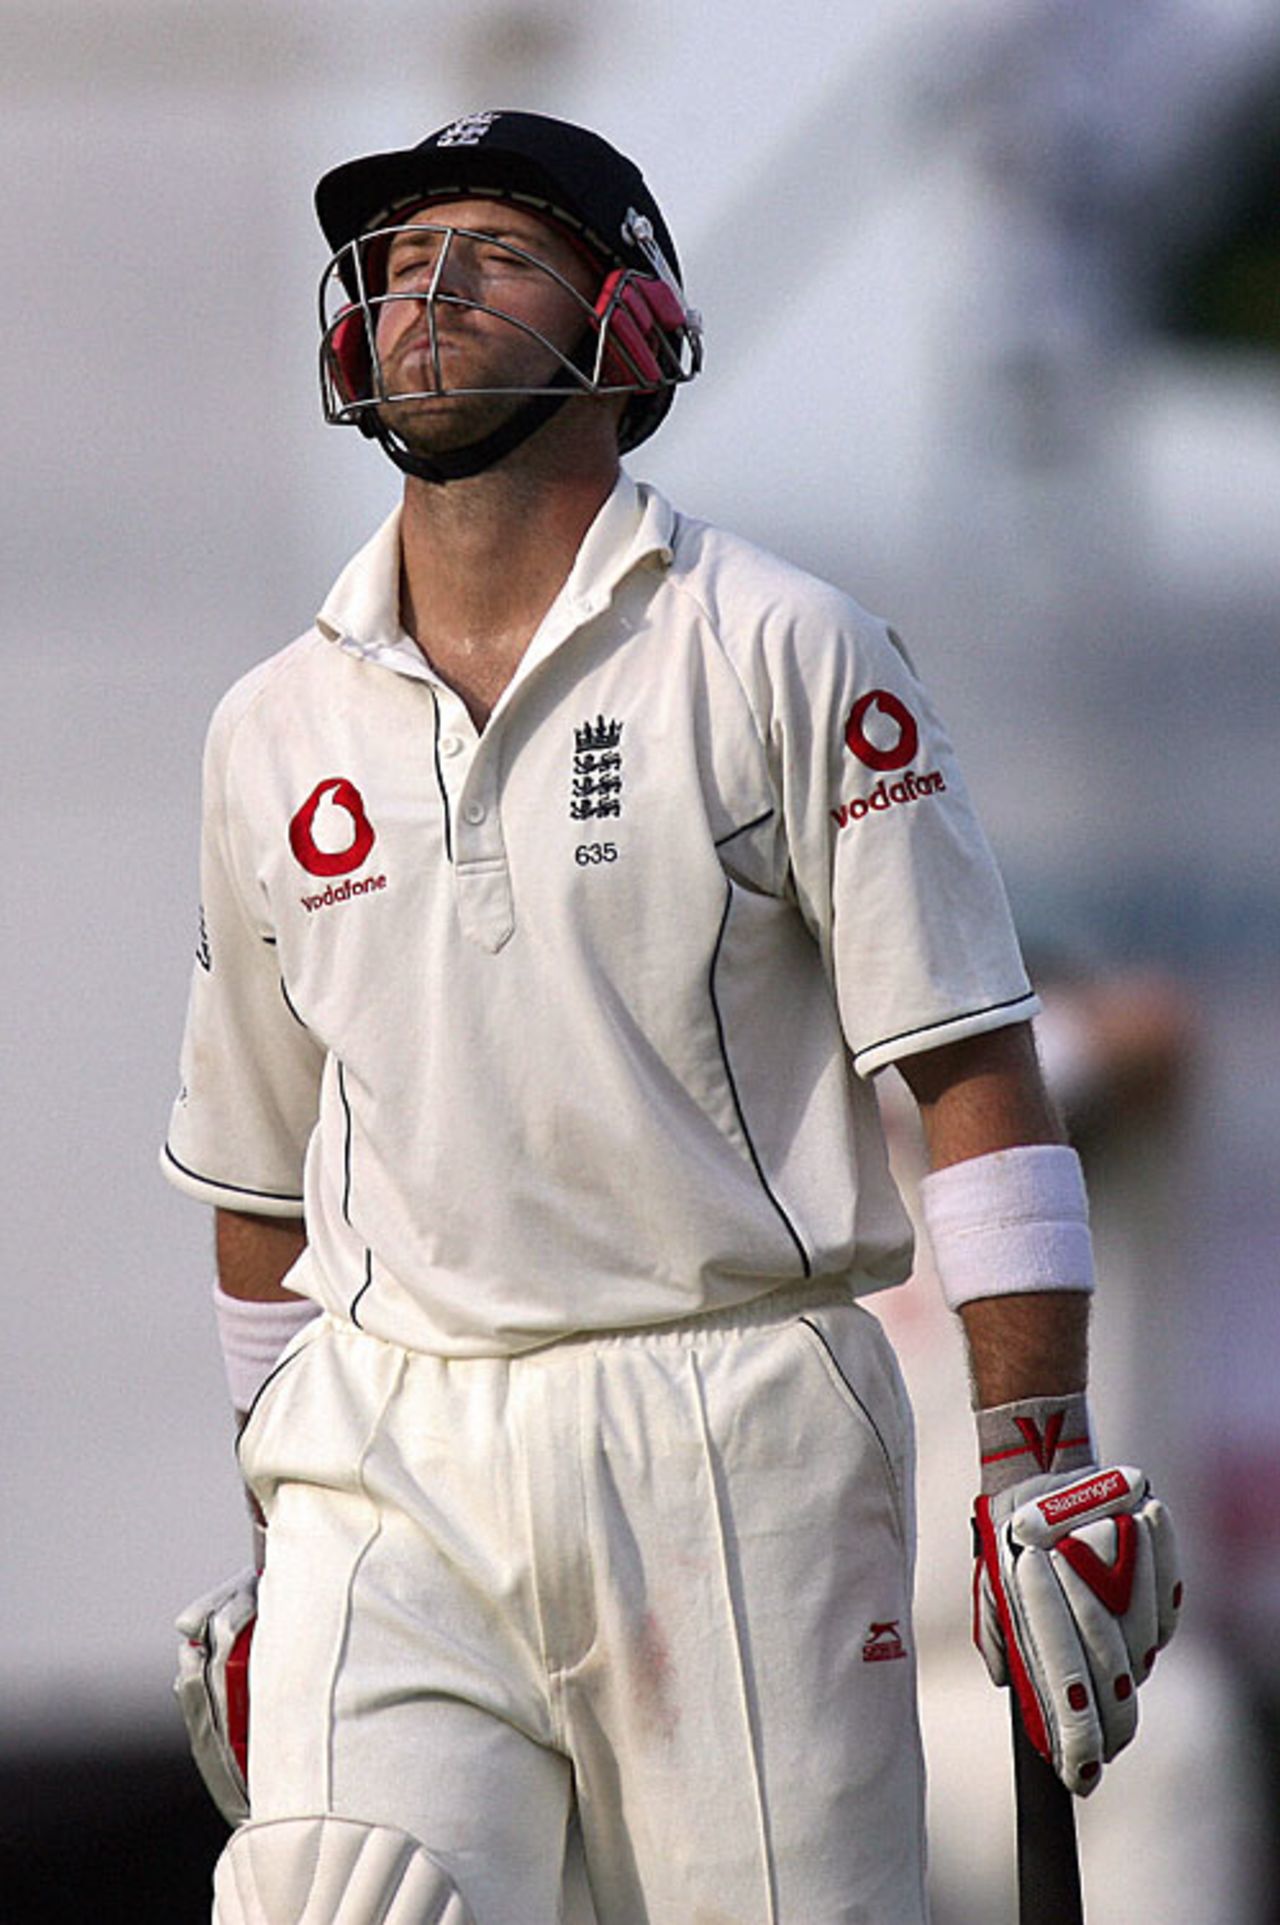 Matt Prior walks back after being bowled for 63, Sri Lanka v England, 1st Test, Kandy, December 5, 2007